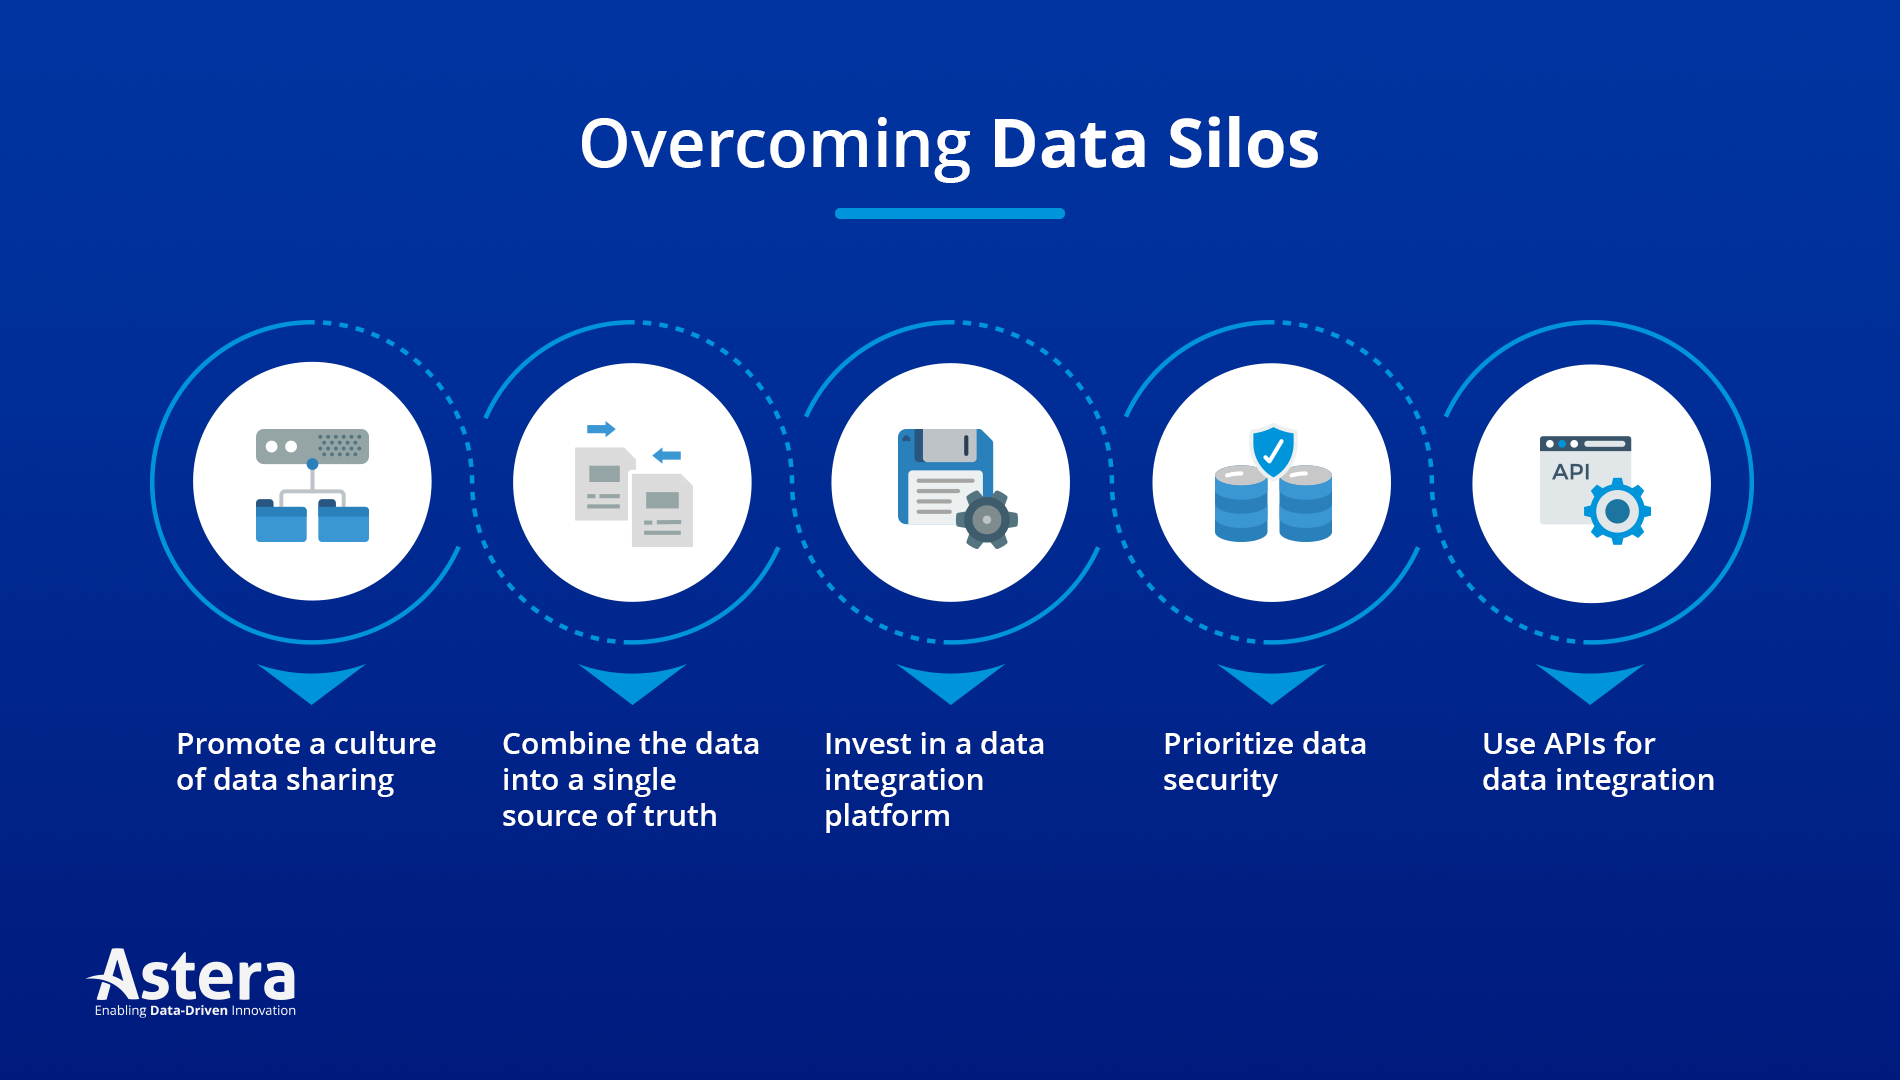 Best practices to break down data silos